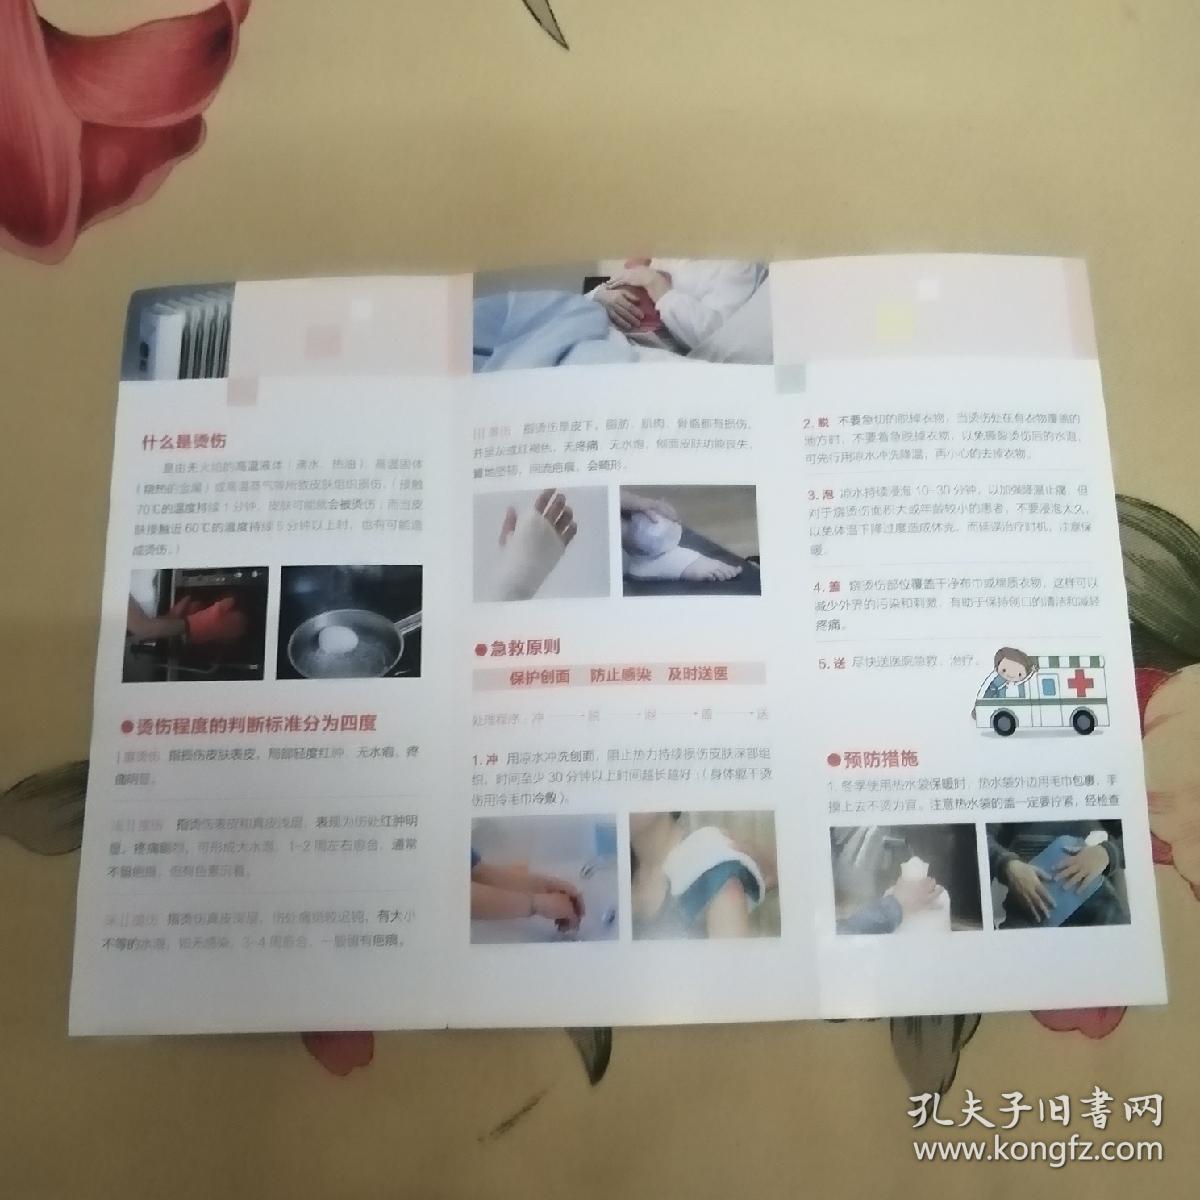 西京医院家庭烫伤应急处理说明卡片